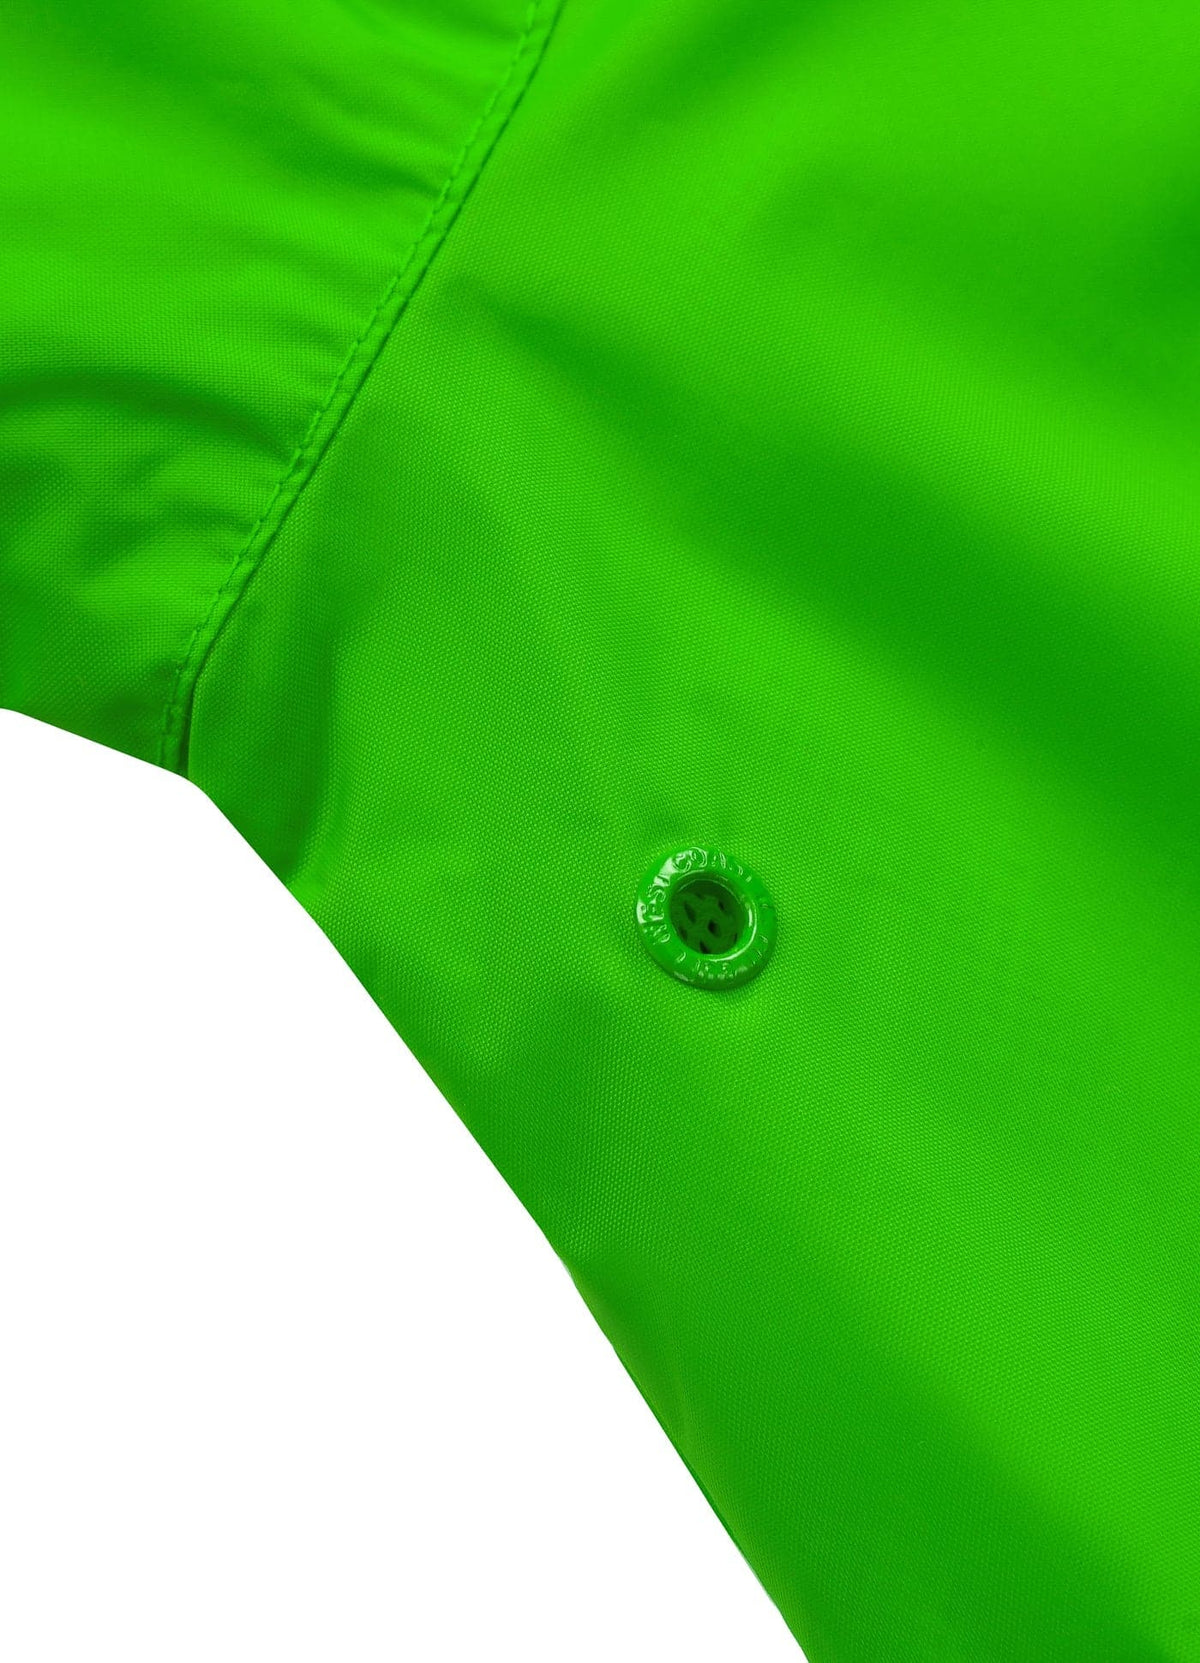 ATHLETIC LOGO Green Jacket